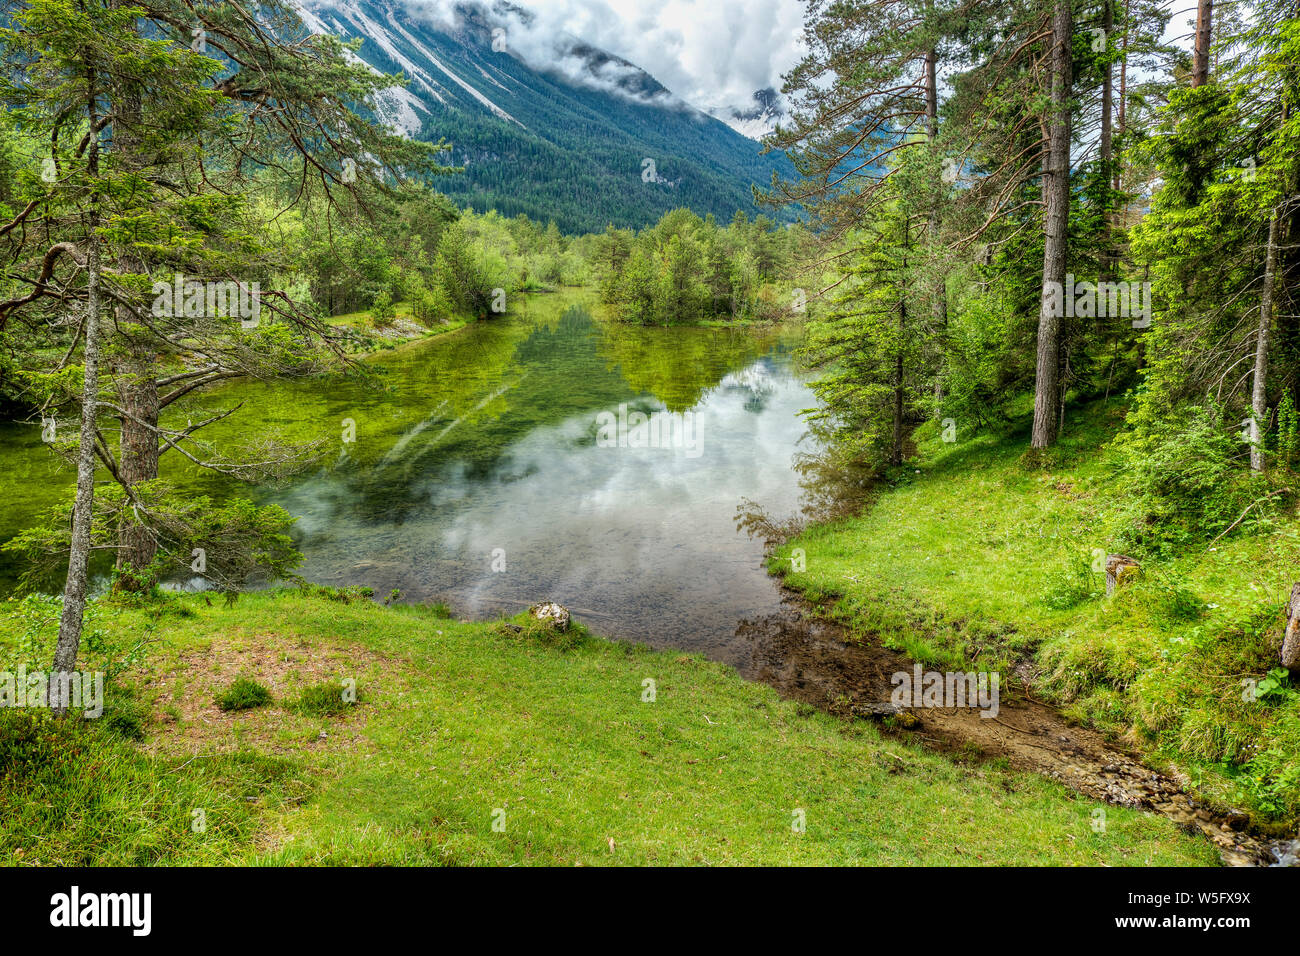 Austria, Tyrol, Lechtal, Naturpark Tiroler Lech, pond, riparian forest Stock Photo